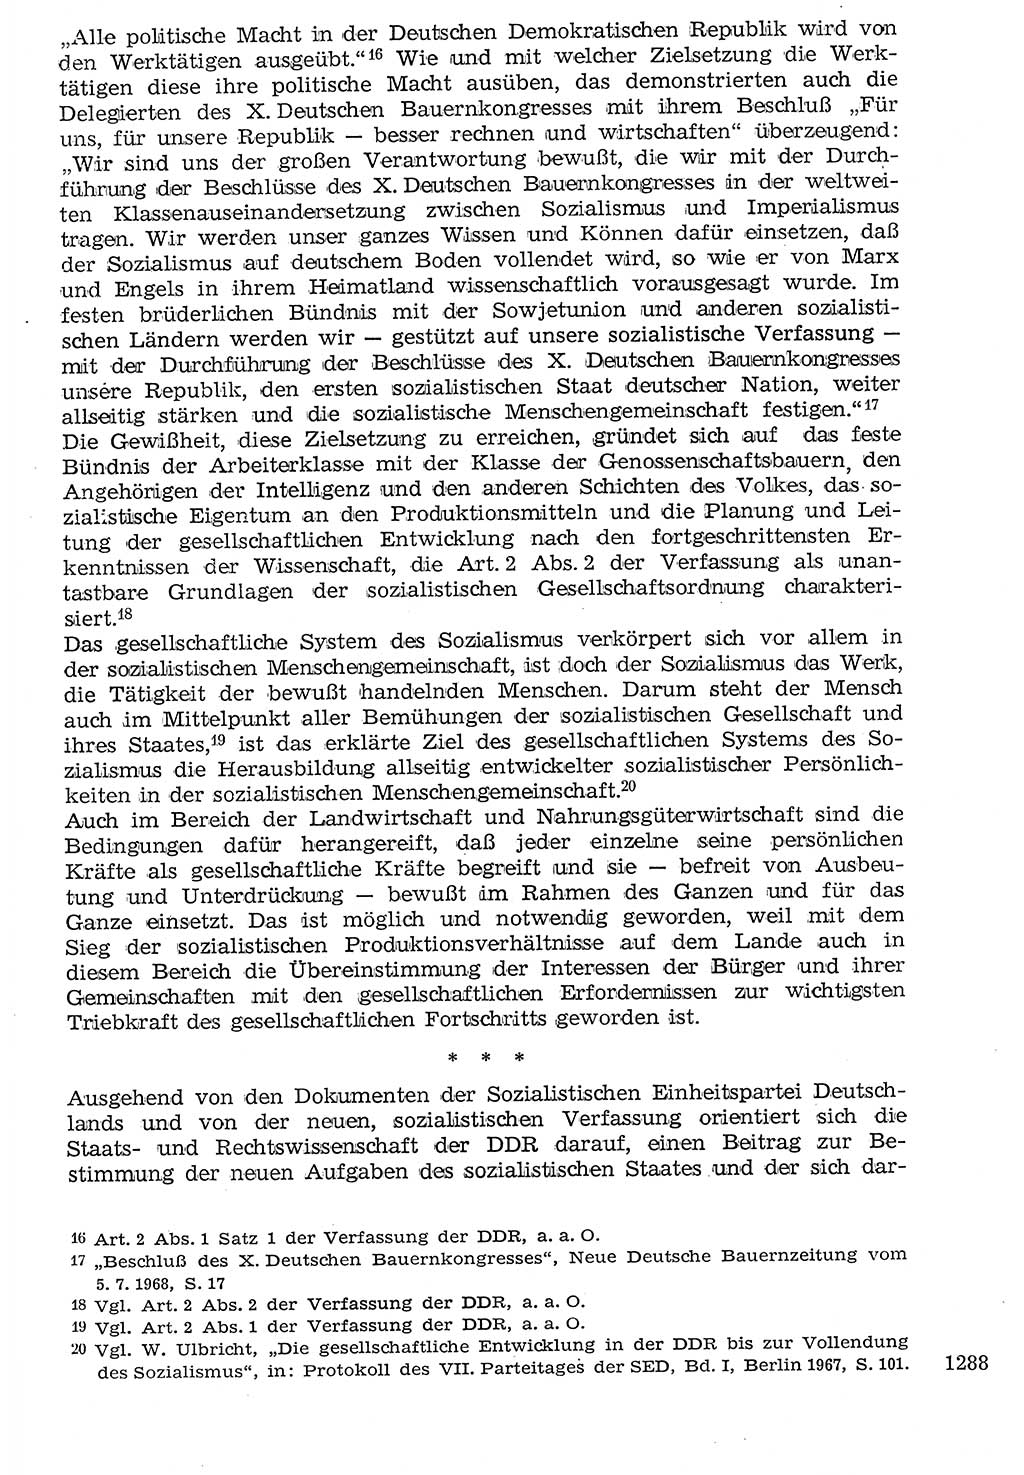 Staat und Recht (StuR), 17. Jahrgang [Deutsche Demokratische Republik (DDR)] 1968, Seite 1288 (StuR DDR 1968, S. 1288)